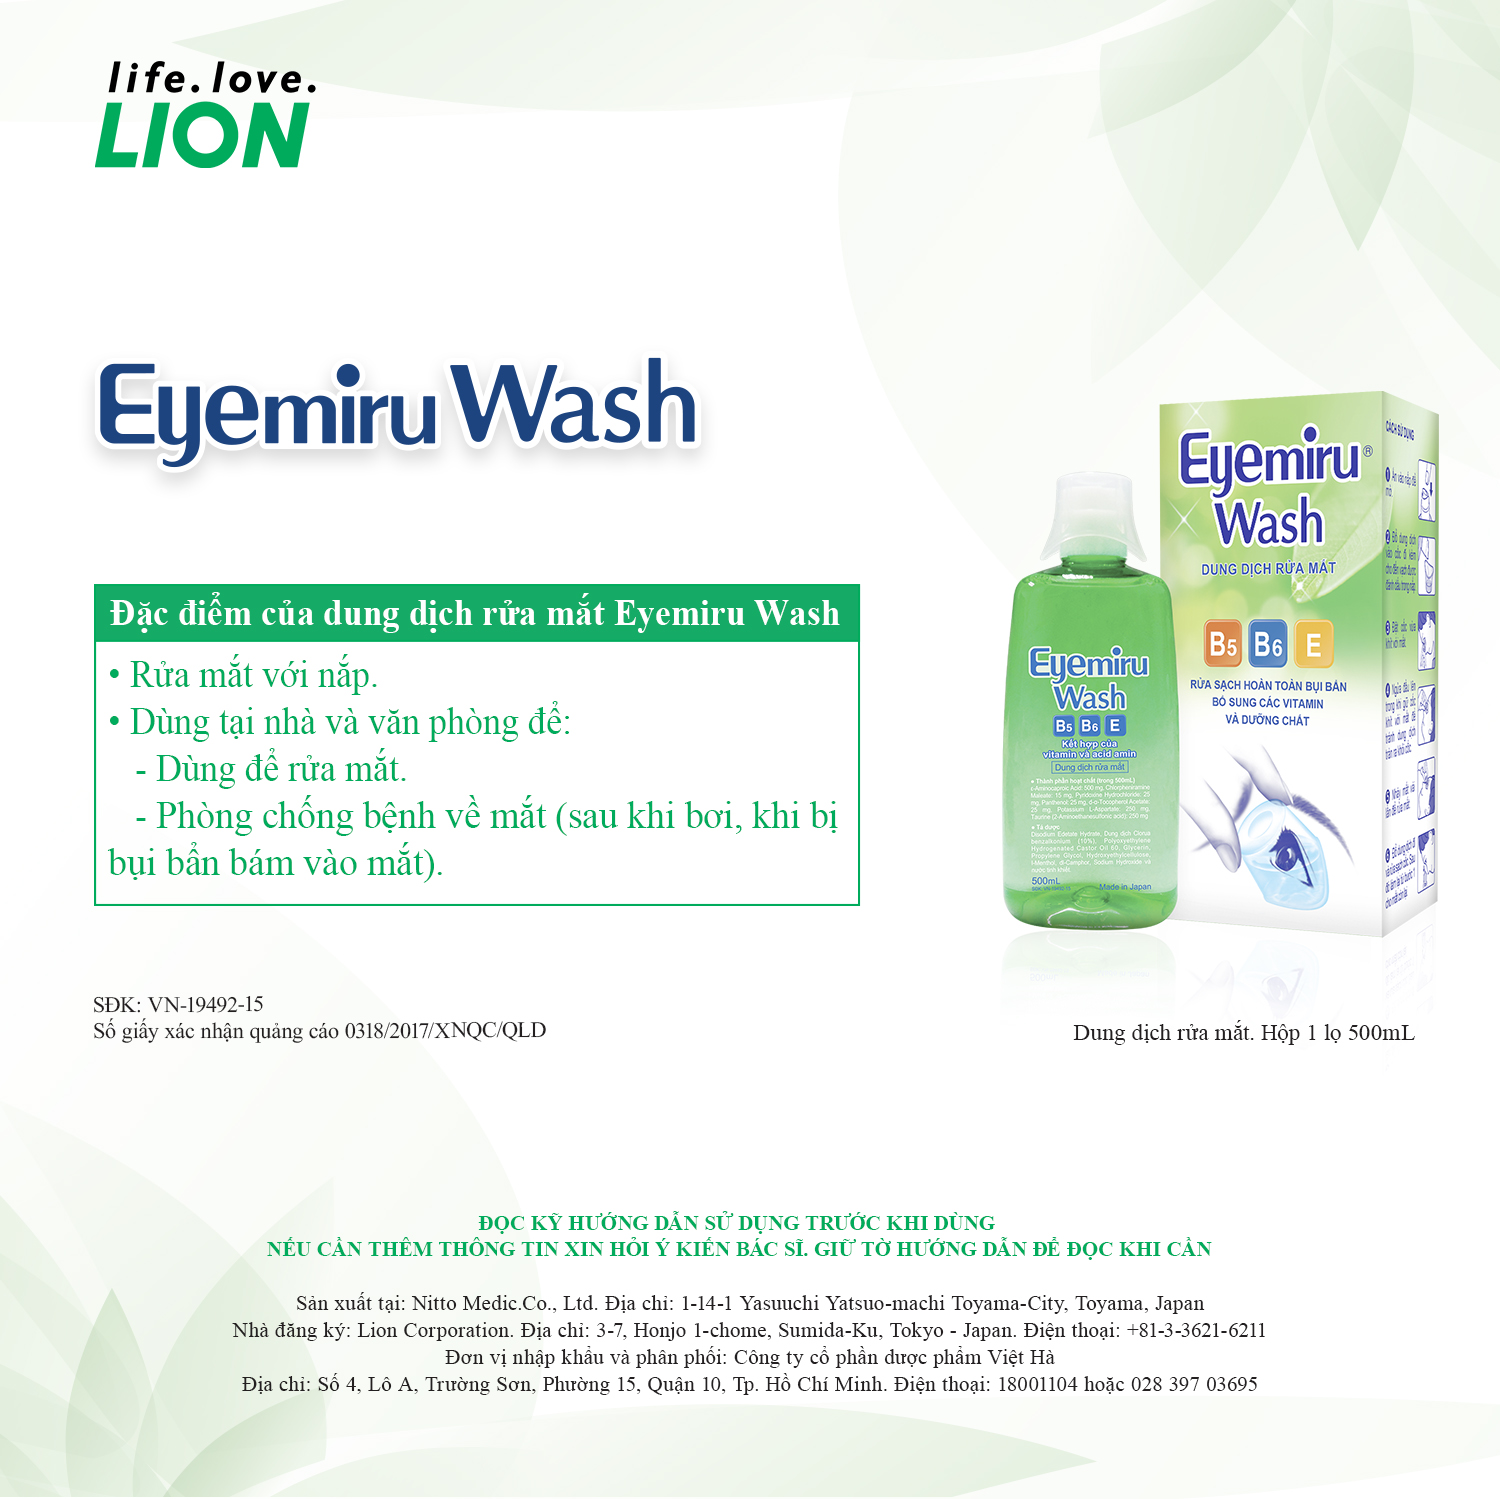 Dung dịch rửa mắt Eyemiru Wash với thành phần gồm Vitamin E, B5, B6 cùng nhiều dưỡng chất, giúp rửa sạch sâu bụi bẩn bên trong mắt sau khi đi ngoài đường, ngăn ngừa các bệnh về mắt sau khi bơi và giảm mệt mỏi cho mắt.